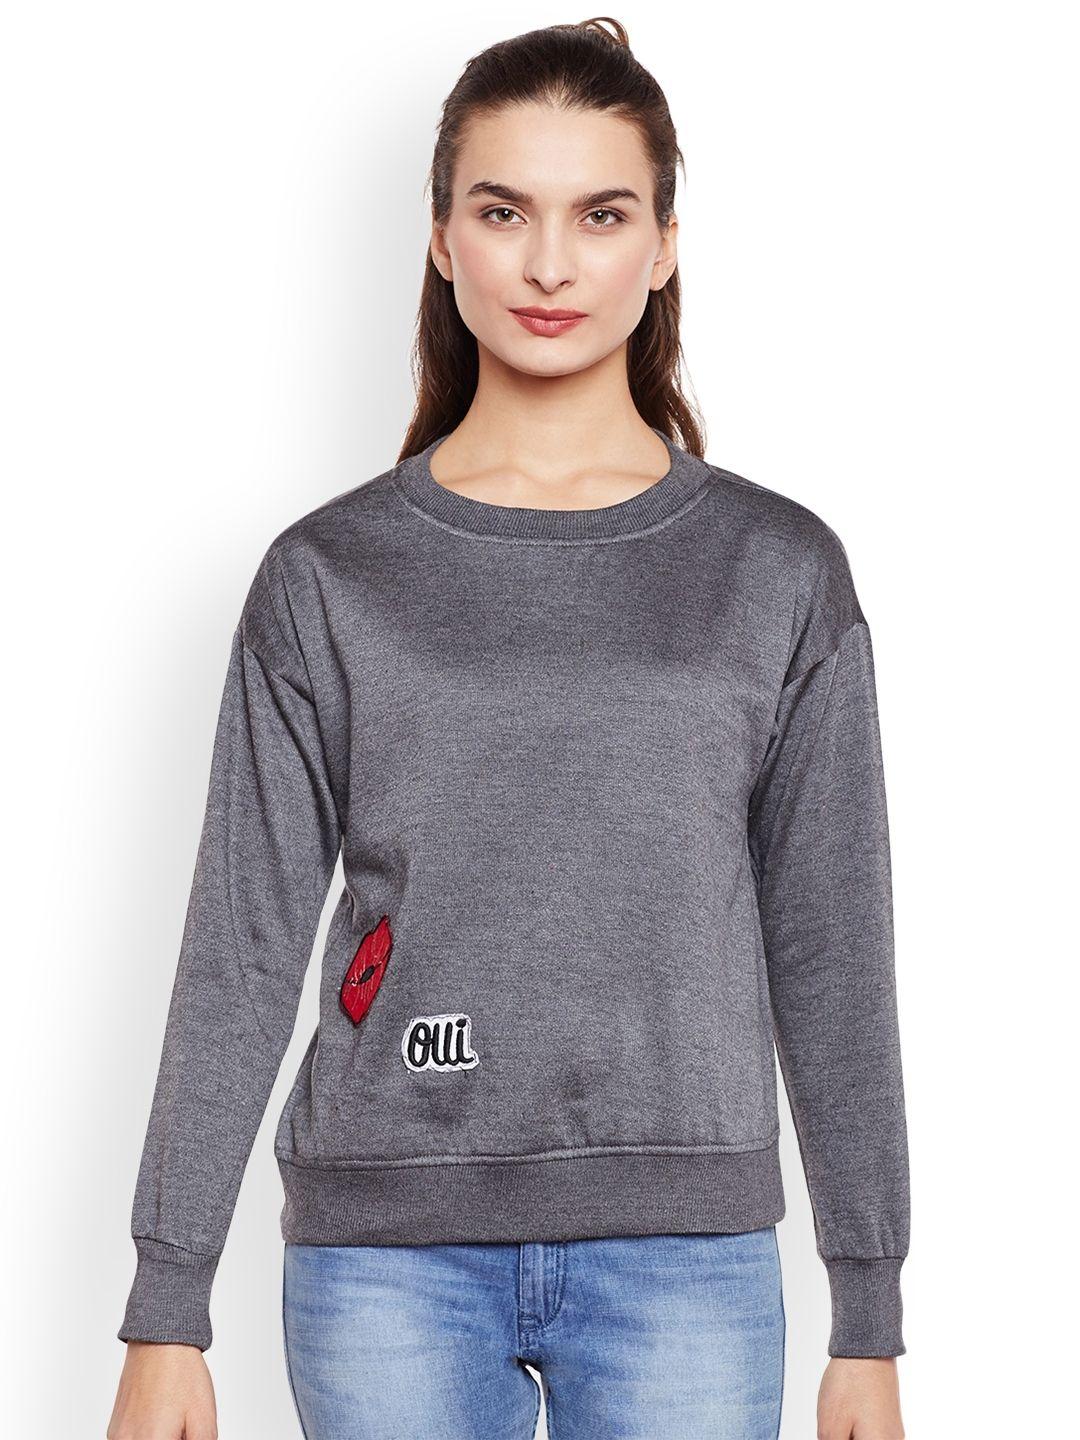 belle-fille-women-grey-solid-sweatshirt